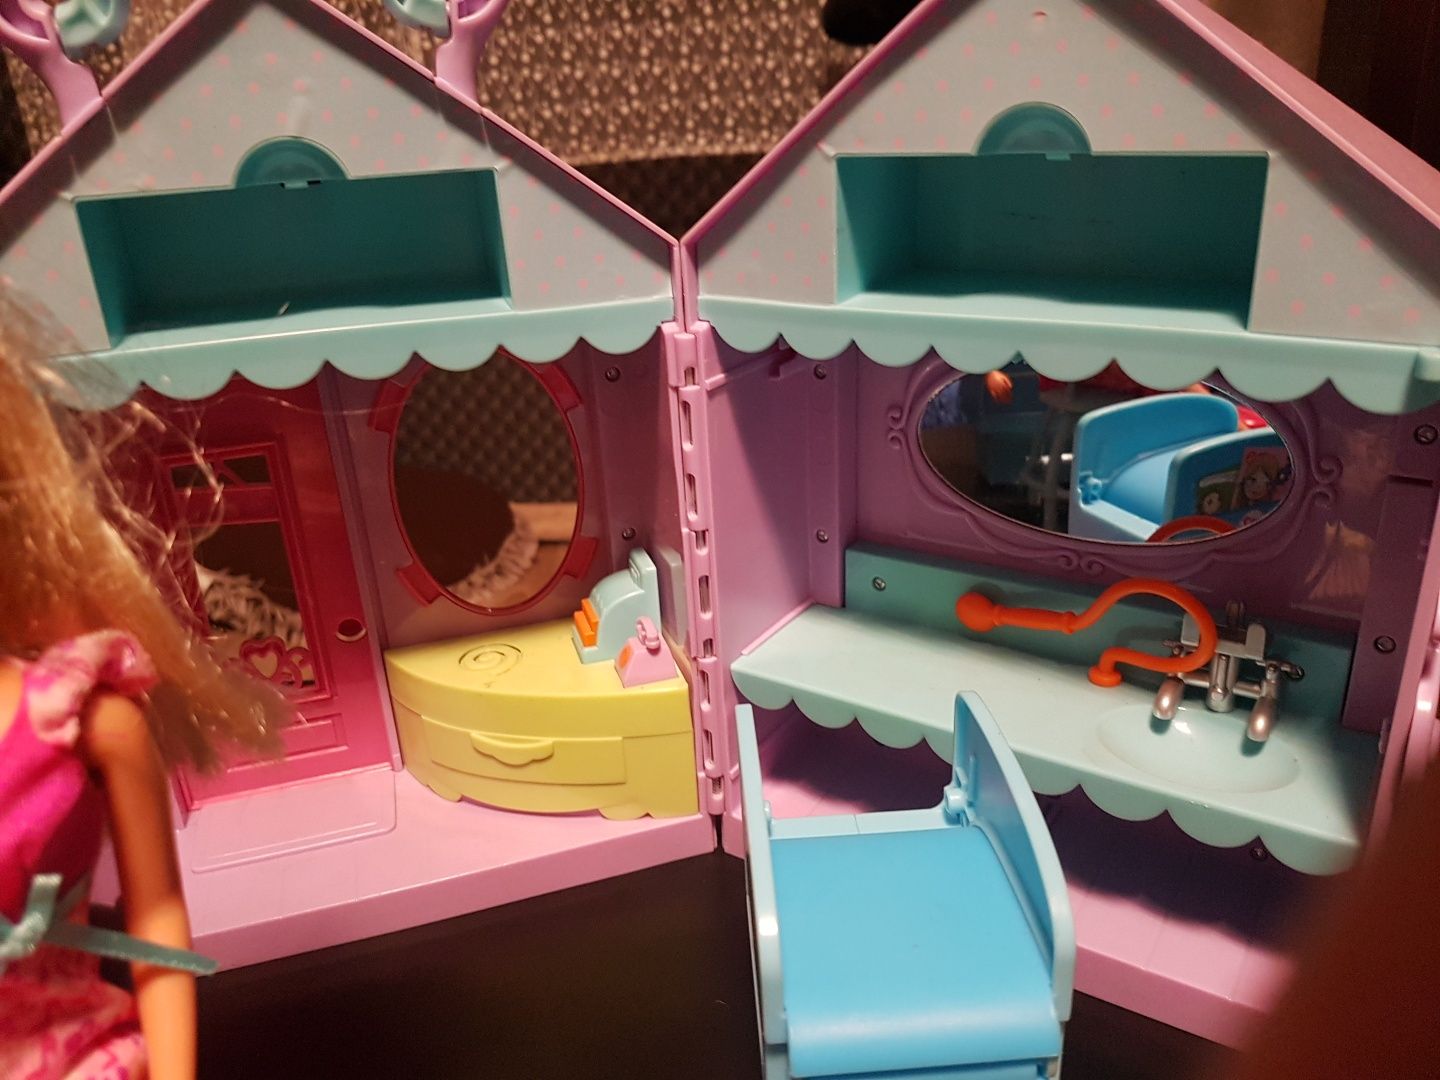 Zakład fryzjerski dla lalek Barbie dźwiękowy interaktywny lalki salon